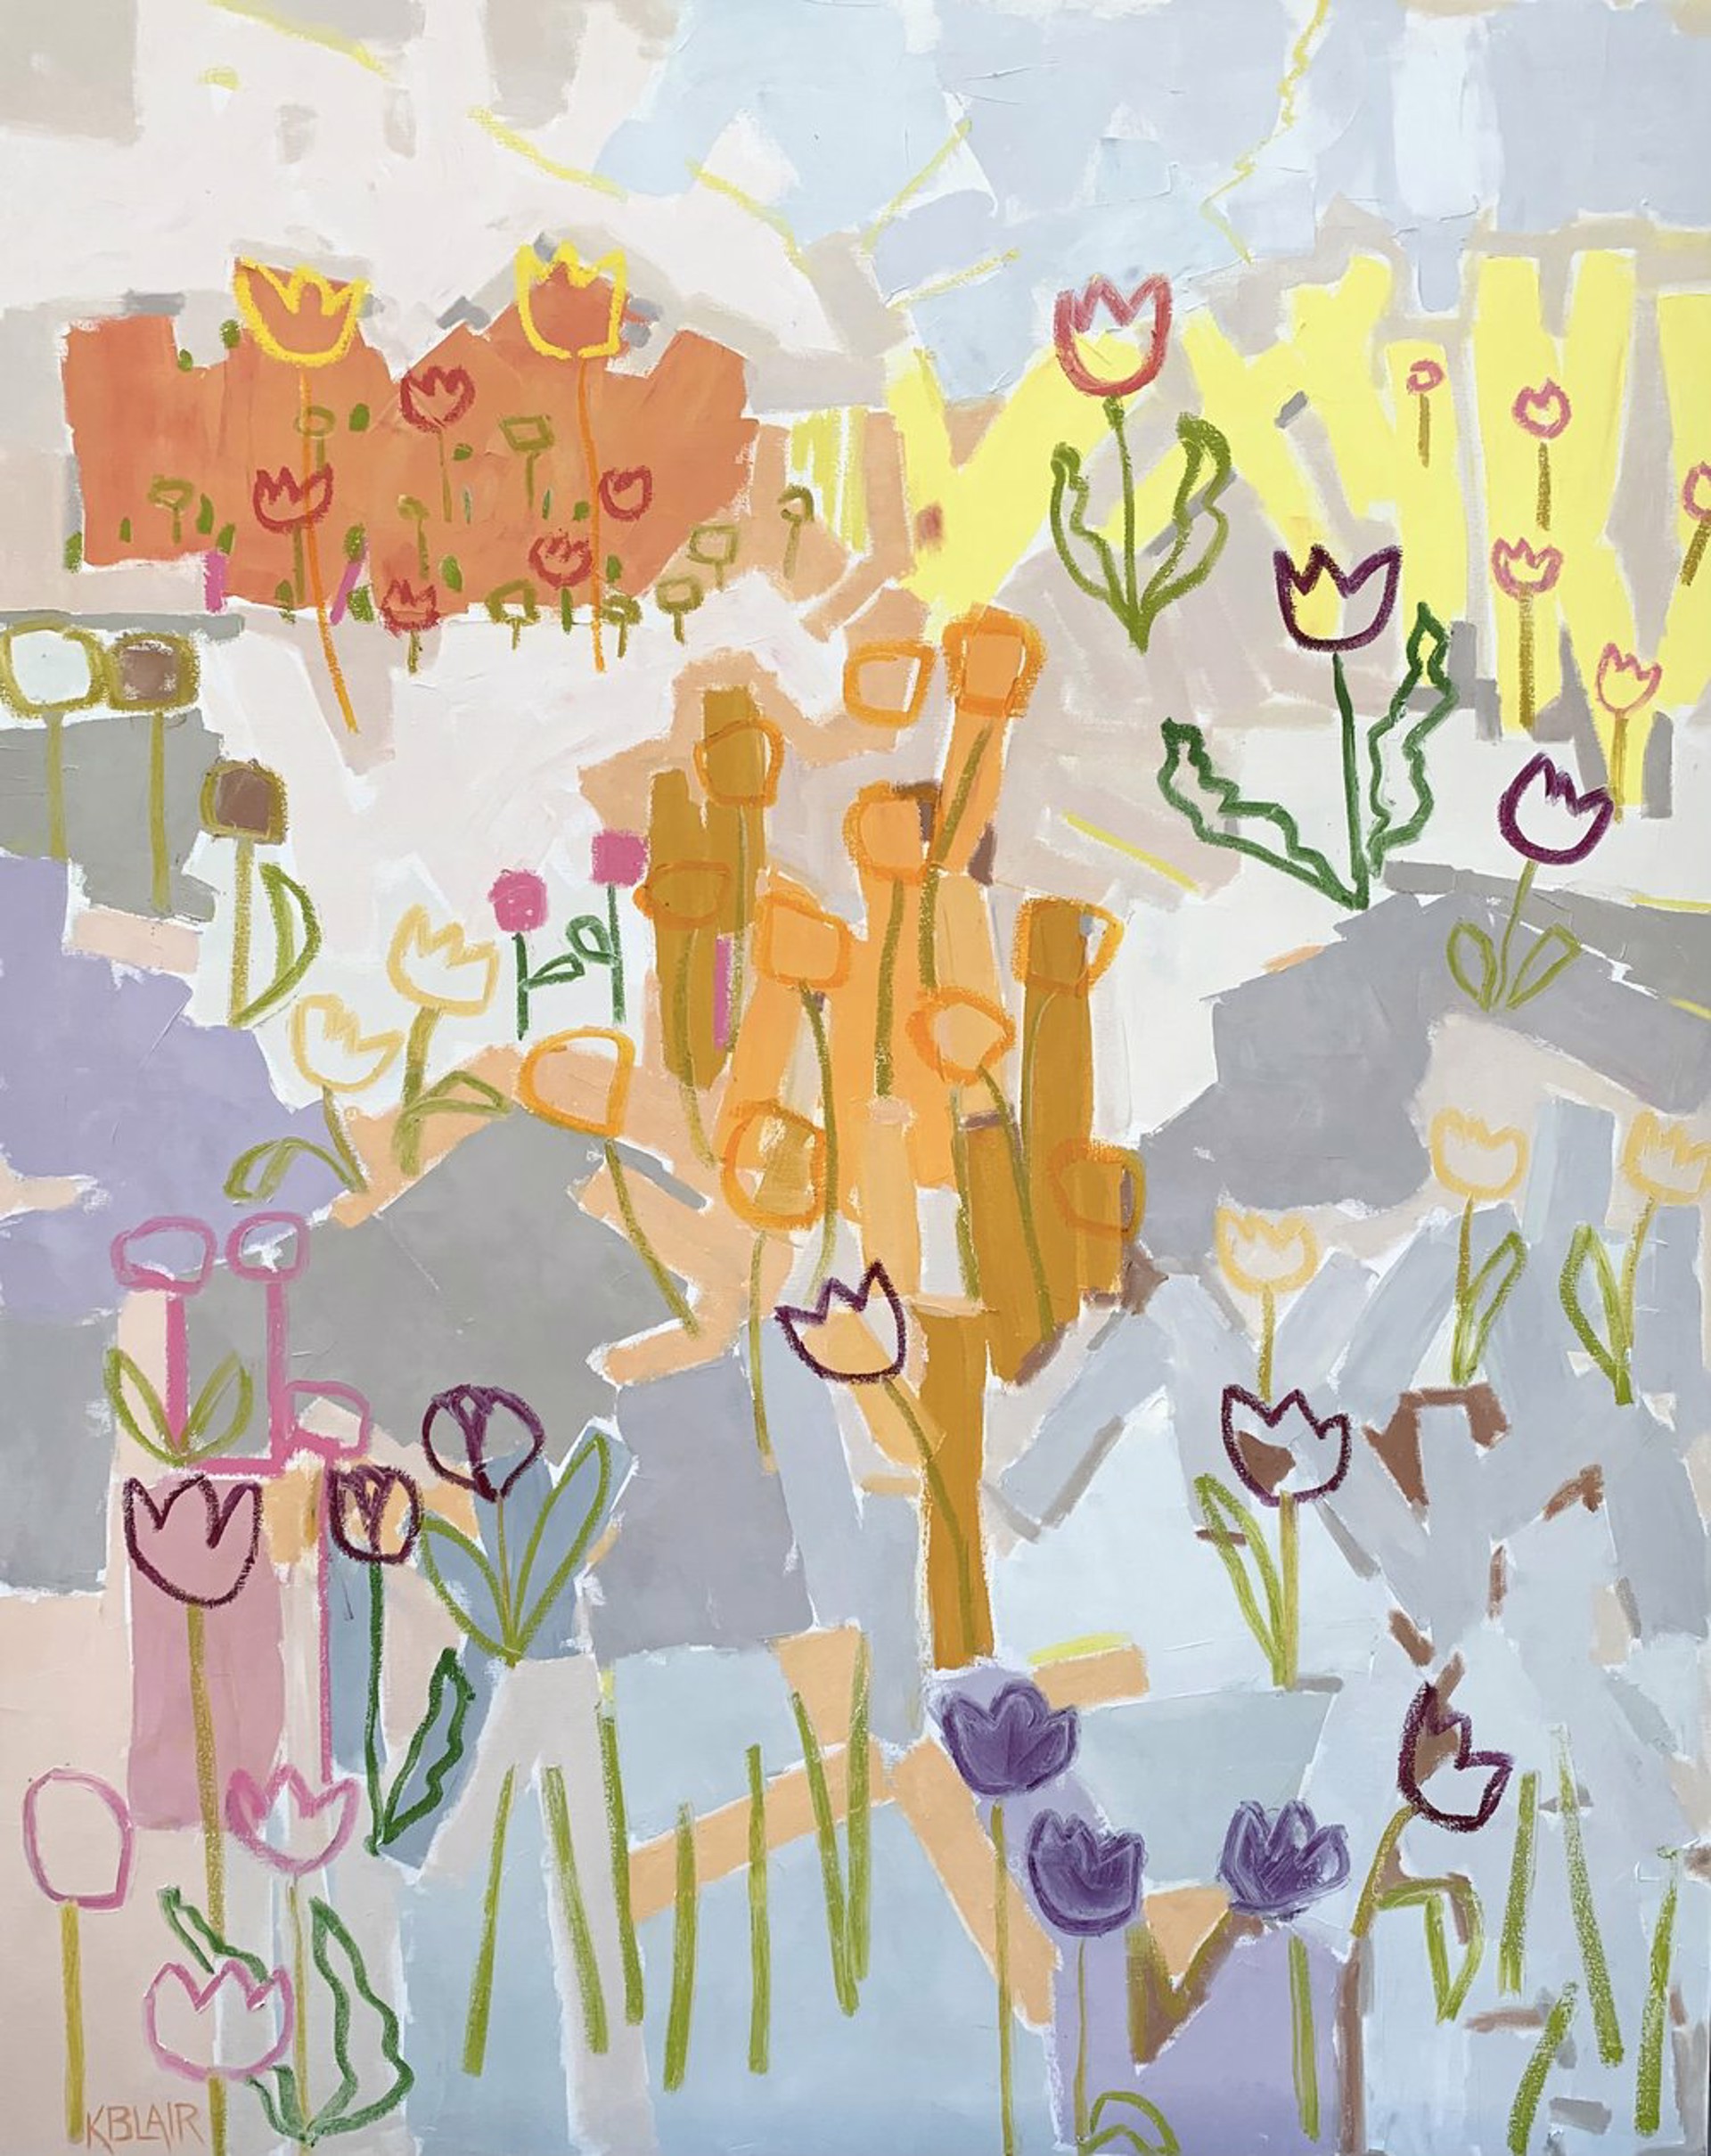 Garden with Tulips by Karen Blair